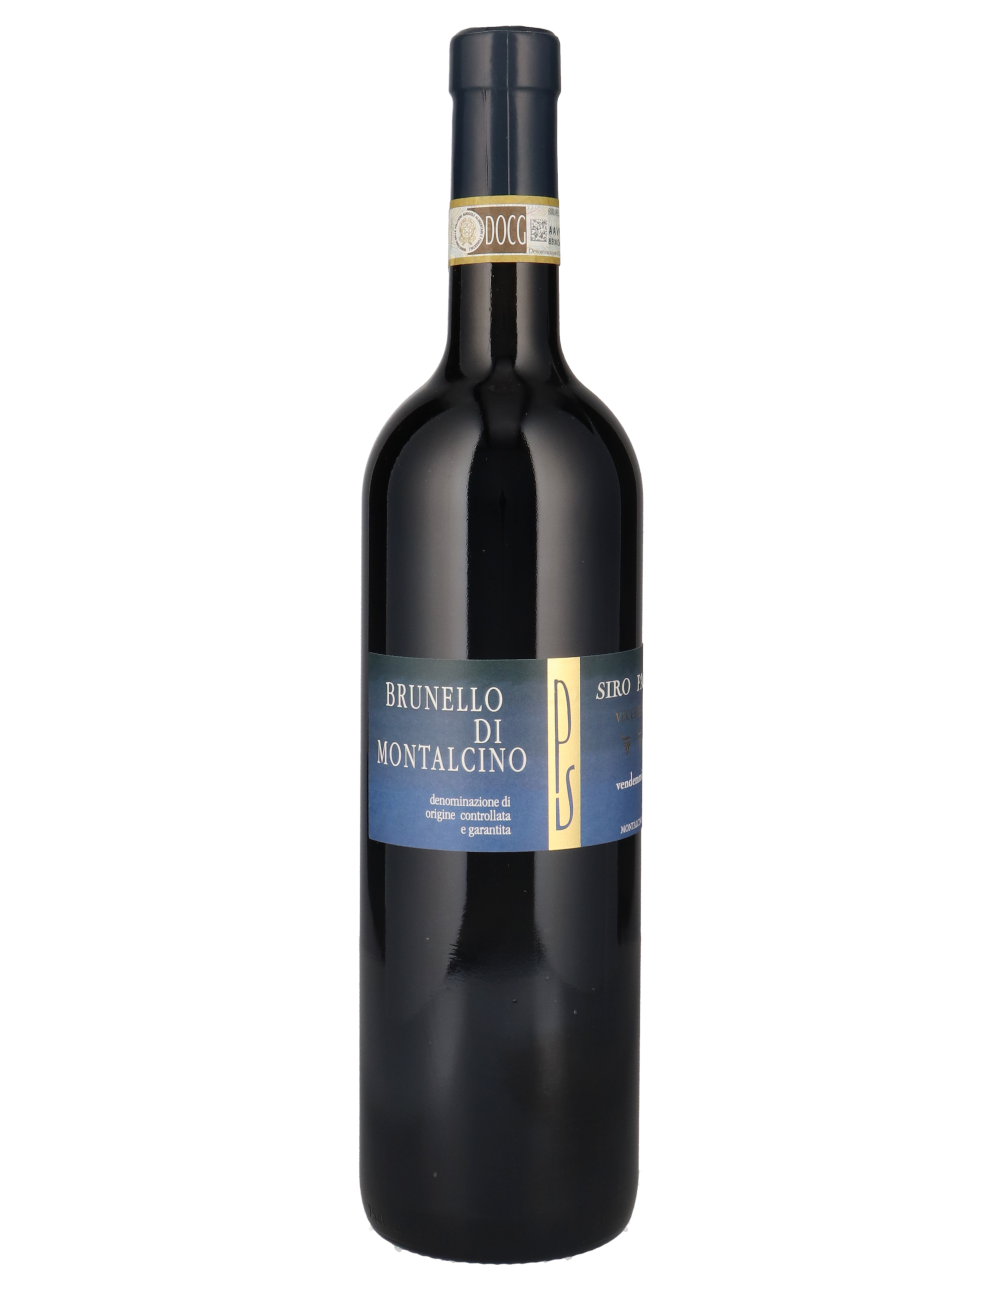 Brunello di Montalcino "Vecchie Vigne"